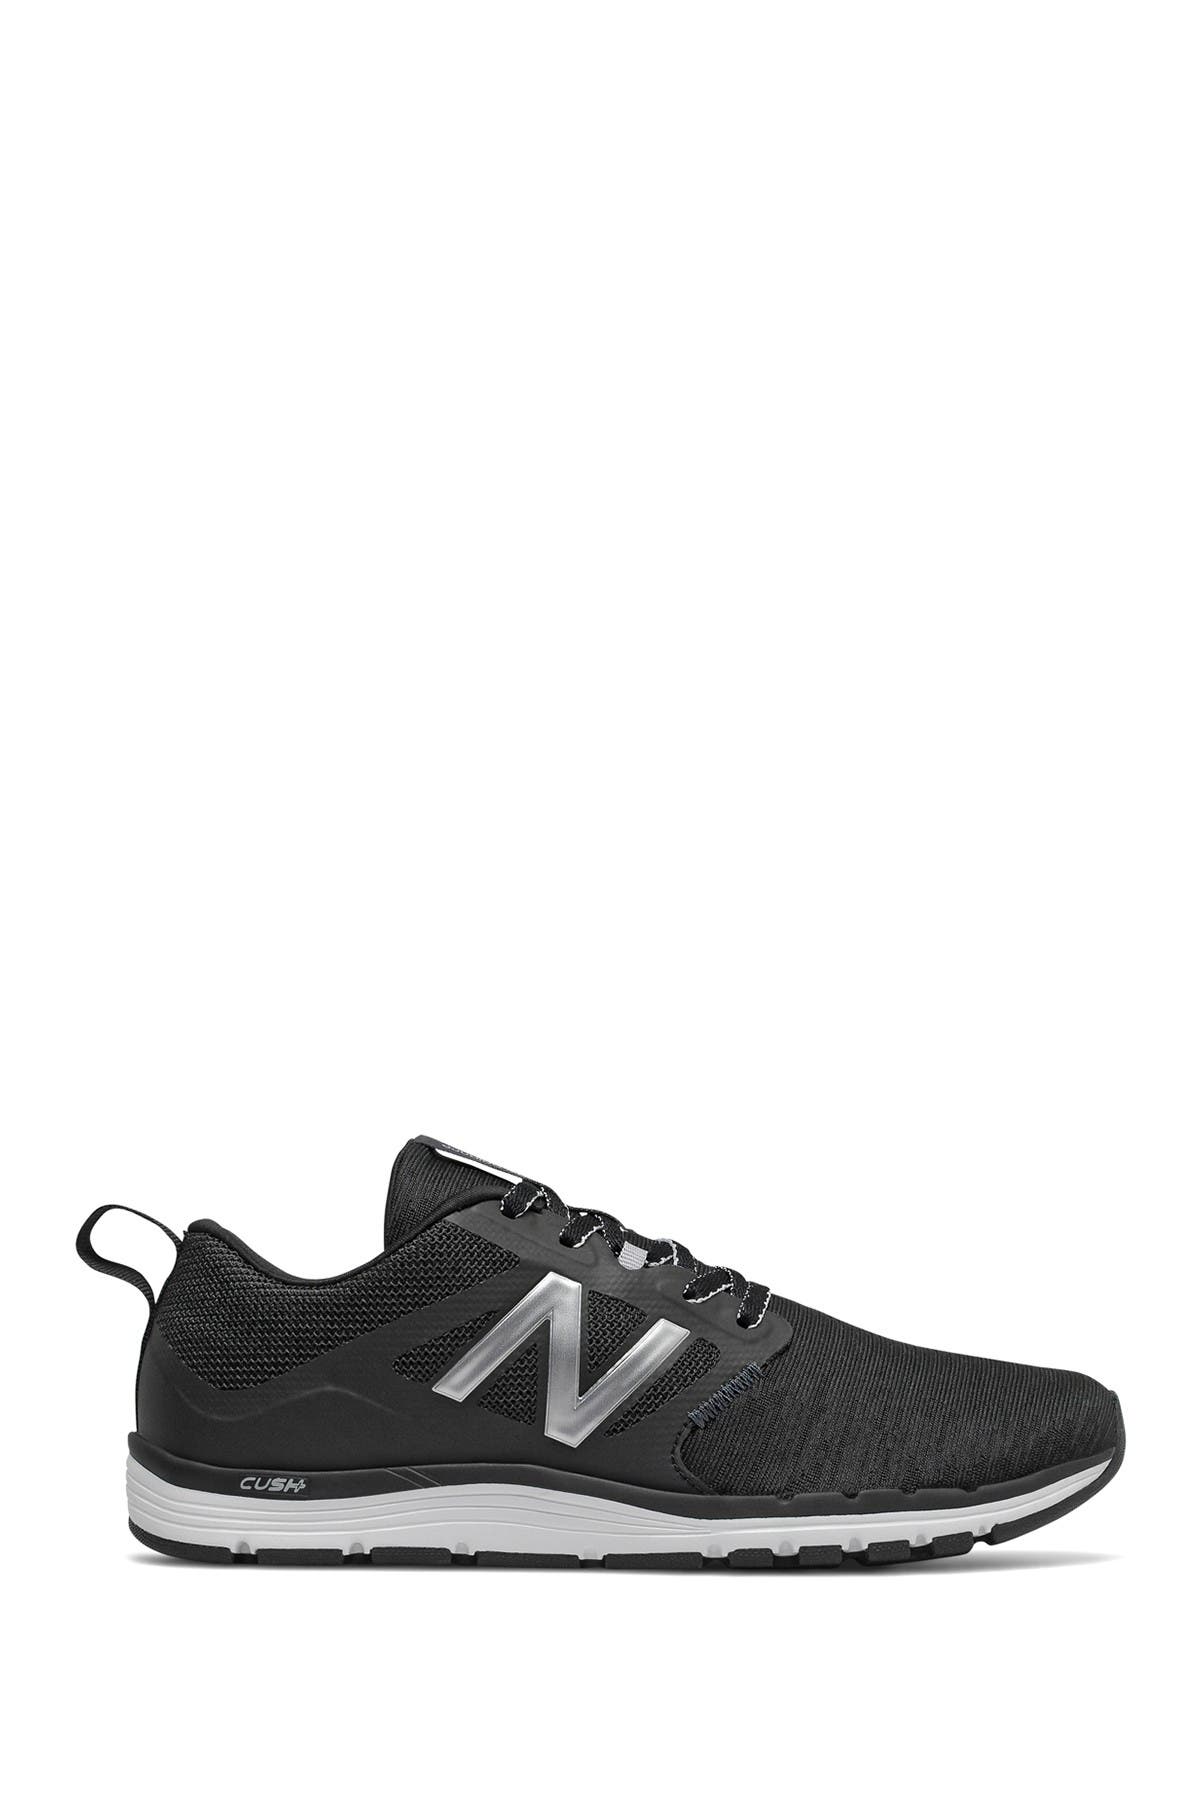 New Balance | 577 Training Shoe 